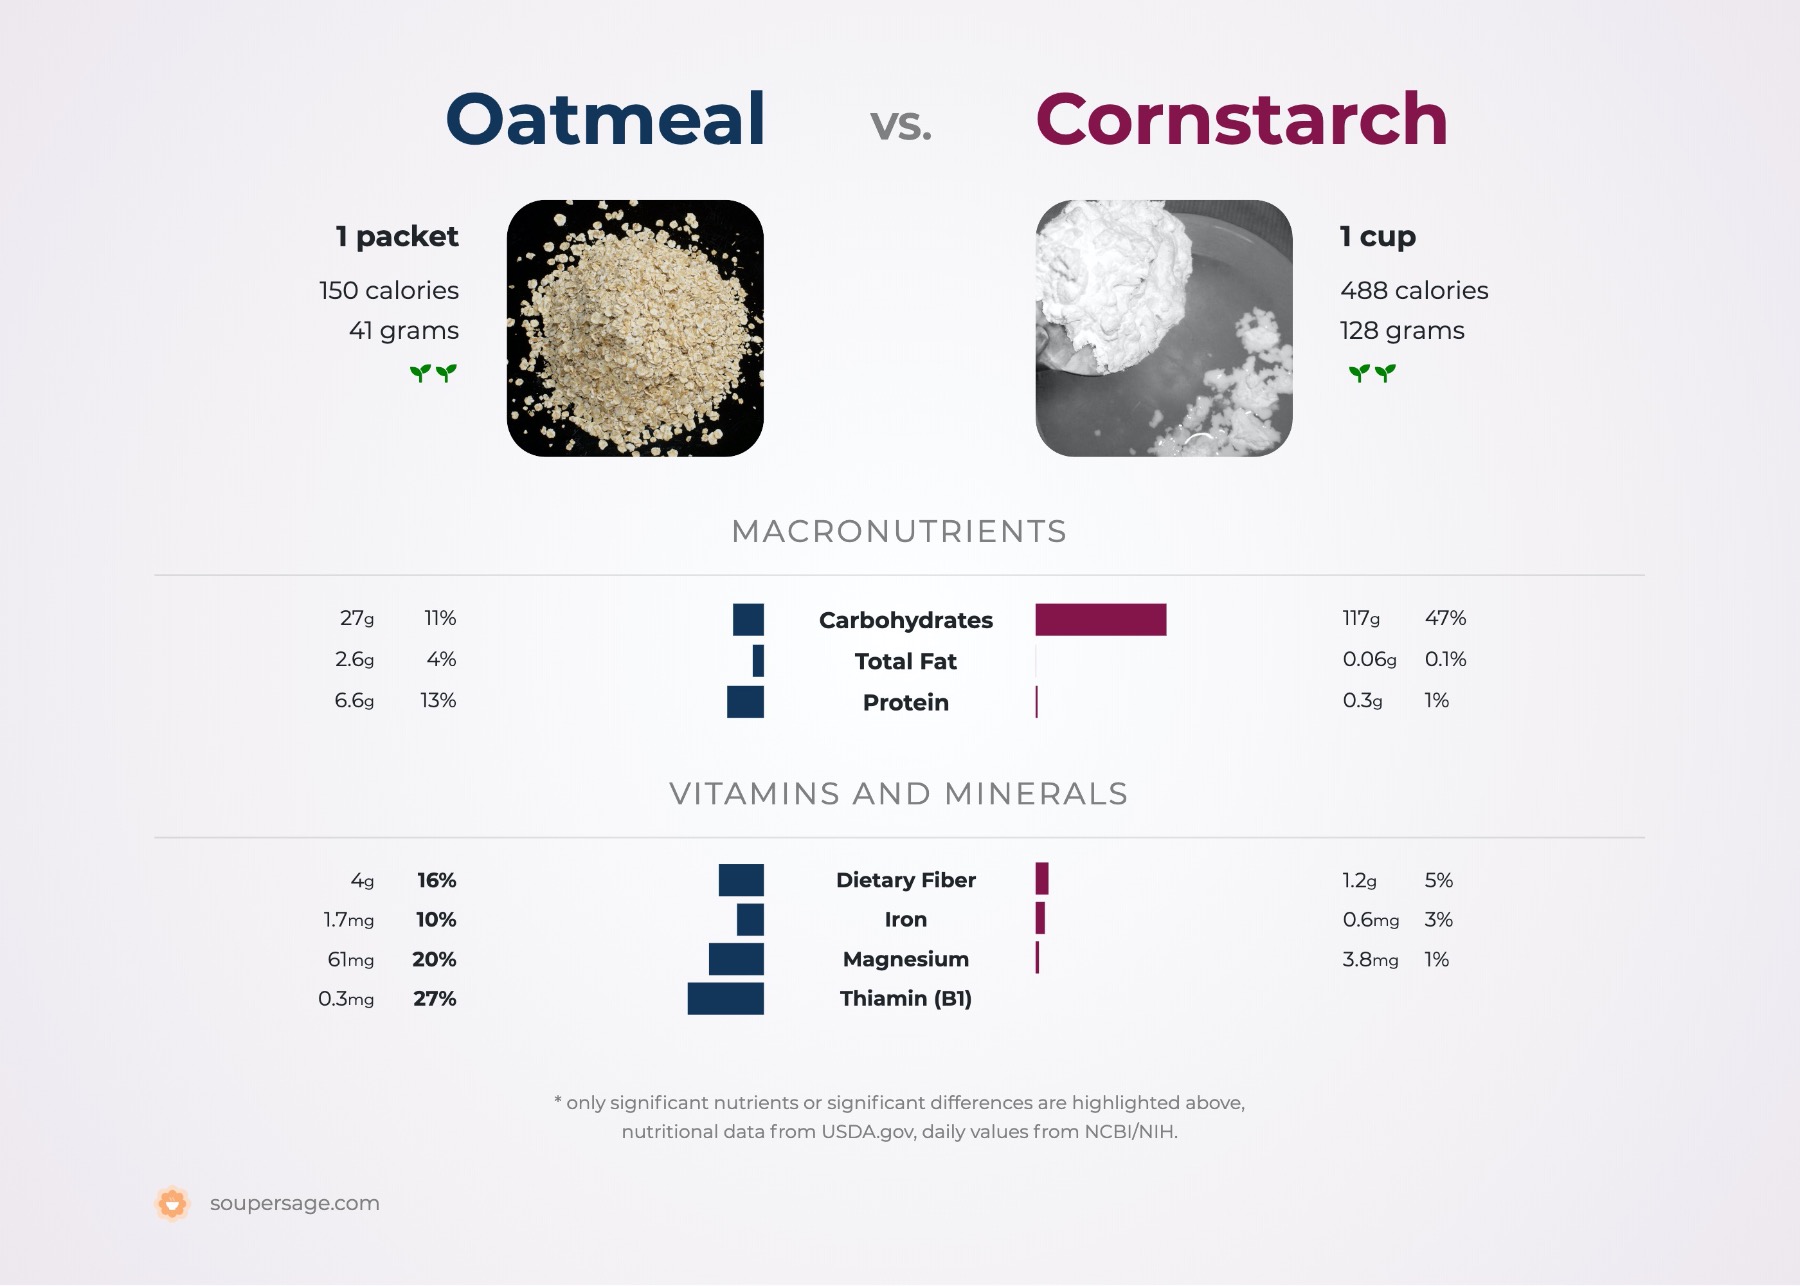 nutrition comparison of oatmeal vs. cornstarch